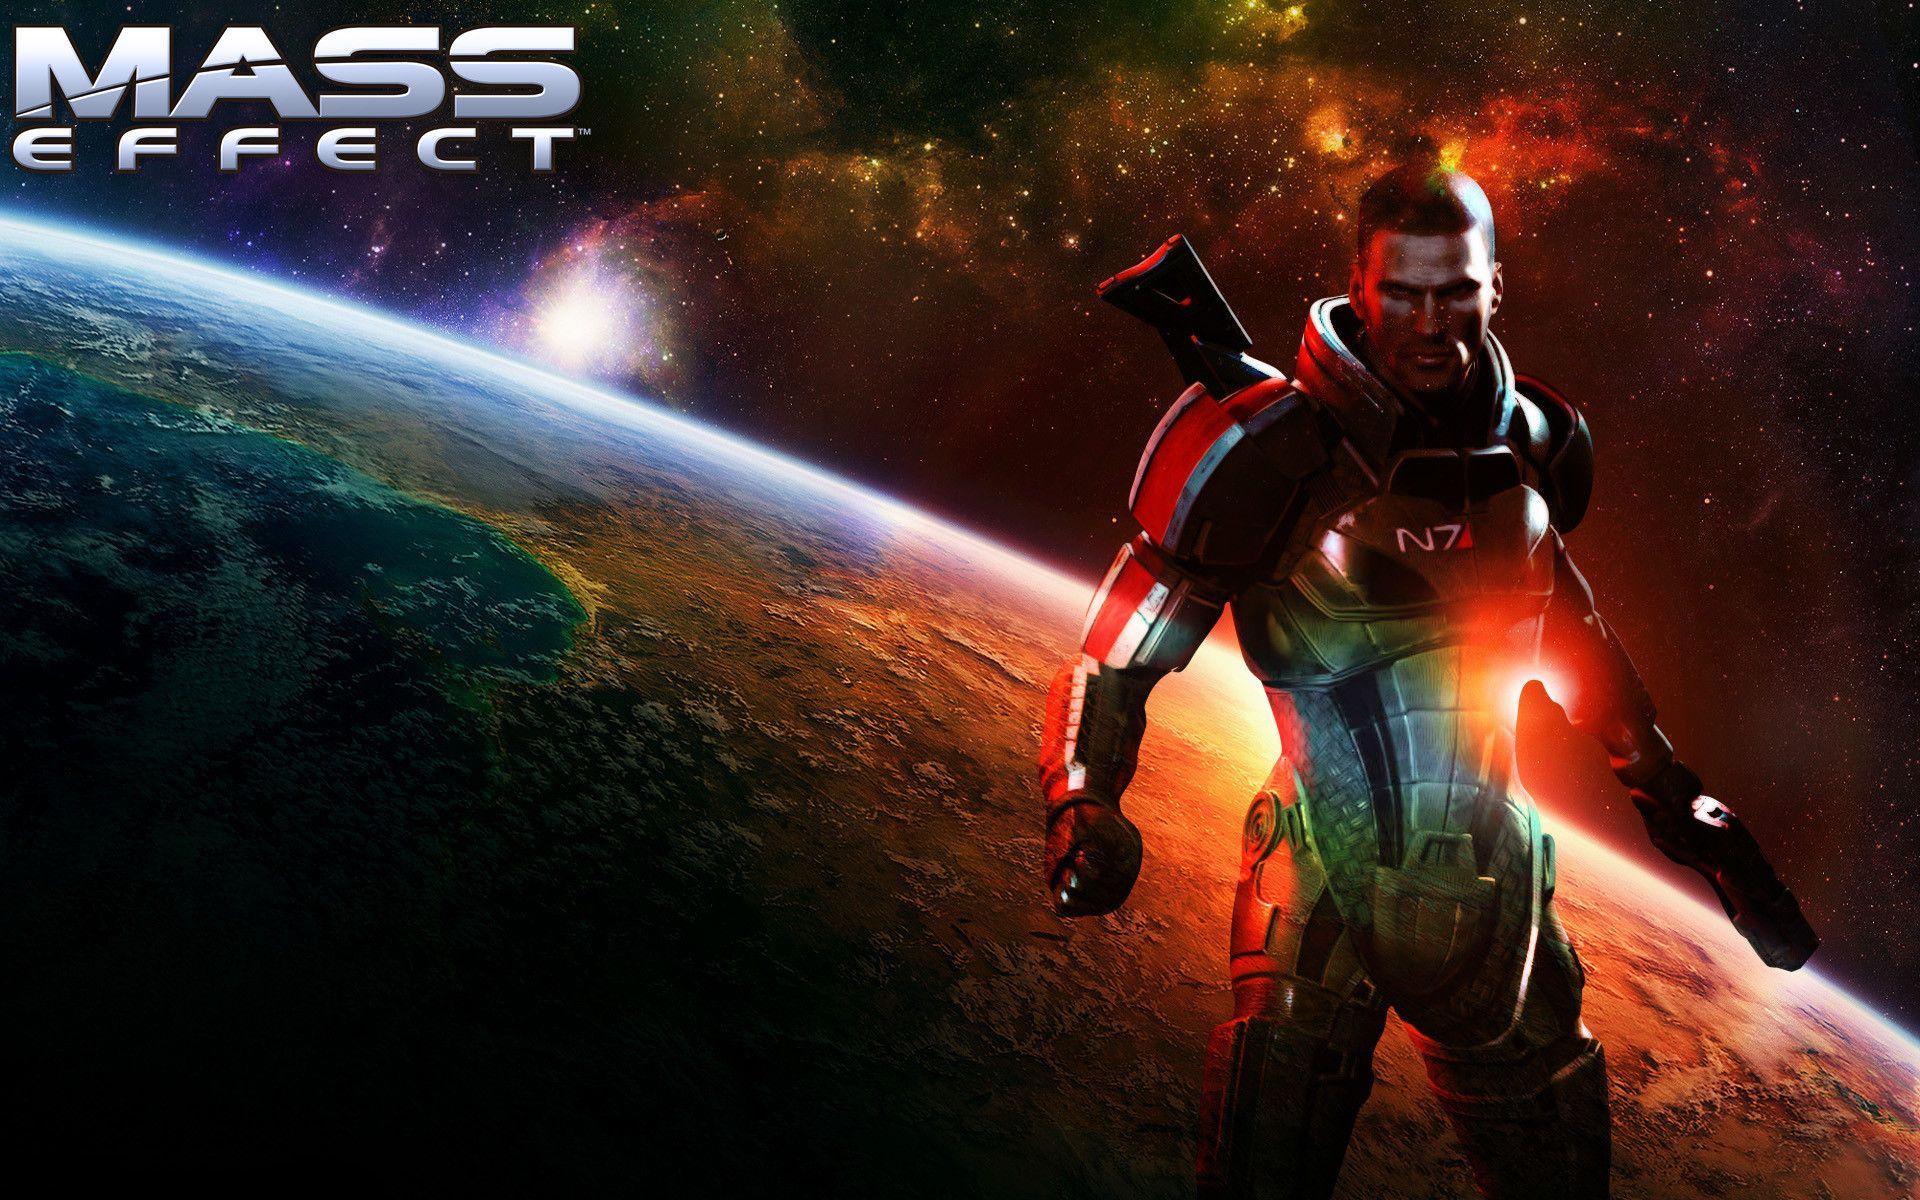 4k Mass Effect Wallpapers Top Free 4k Mass Effect Backgrounds 